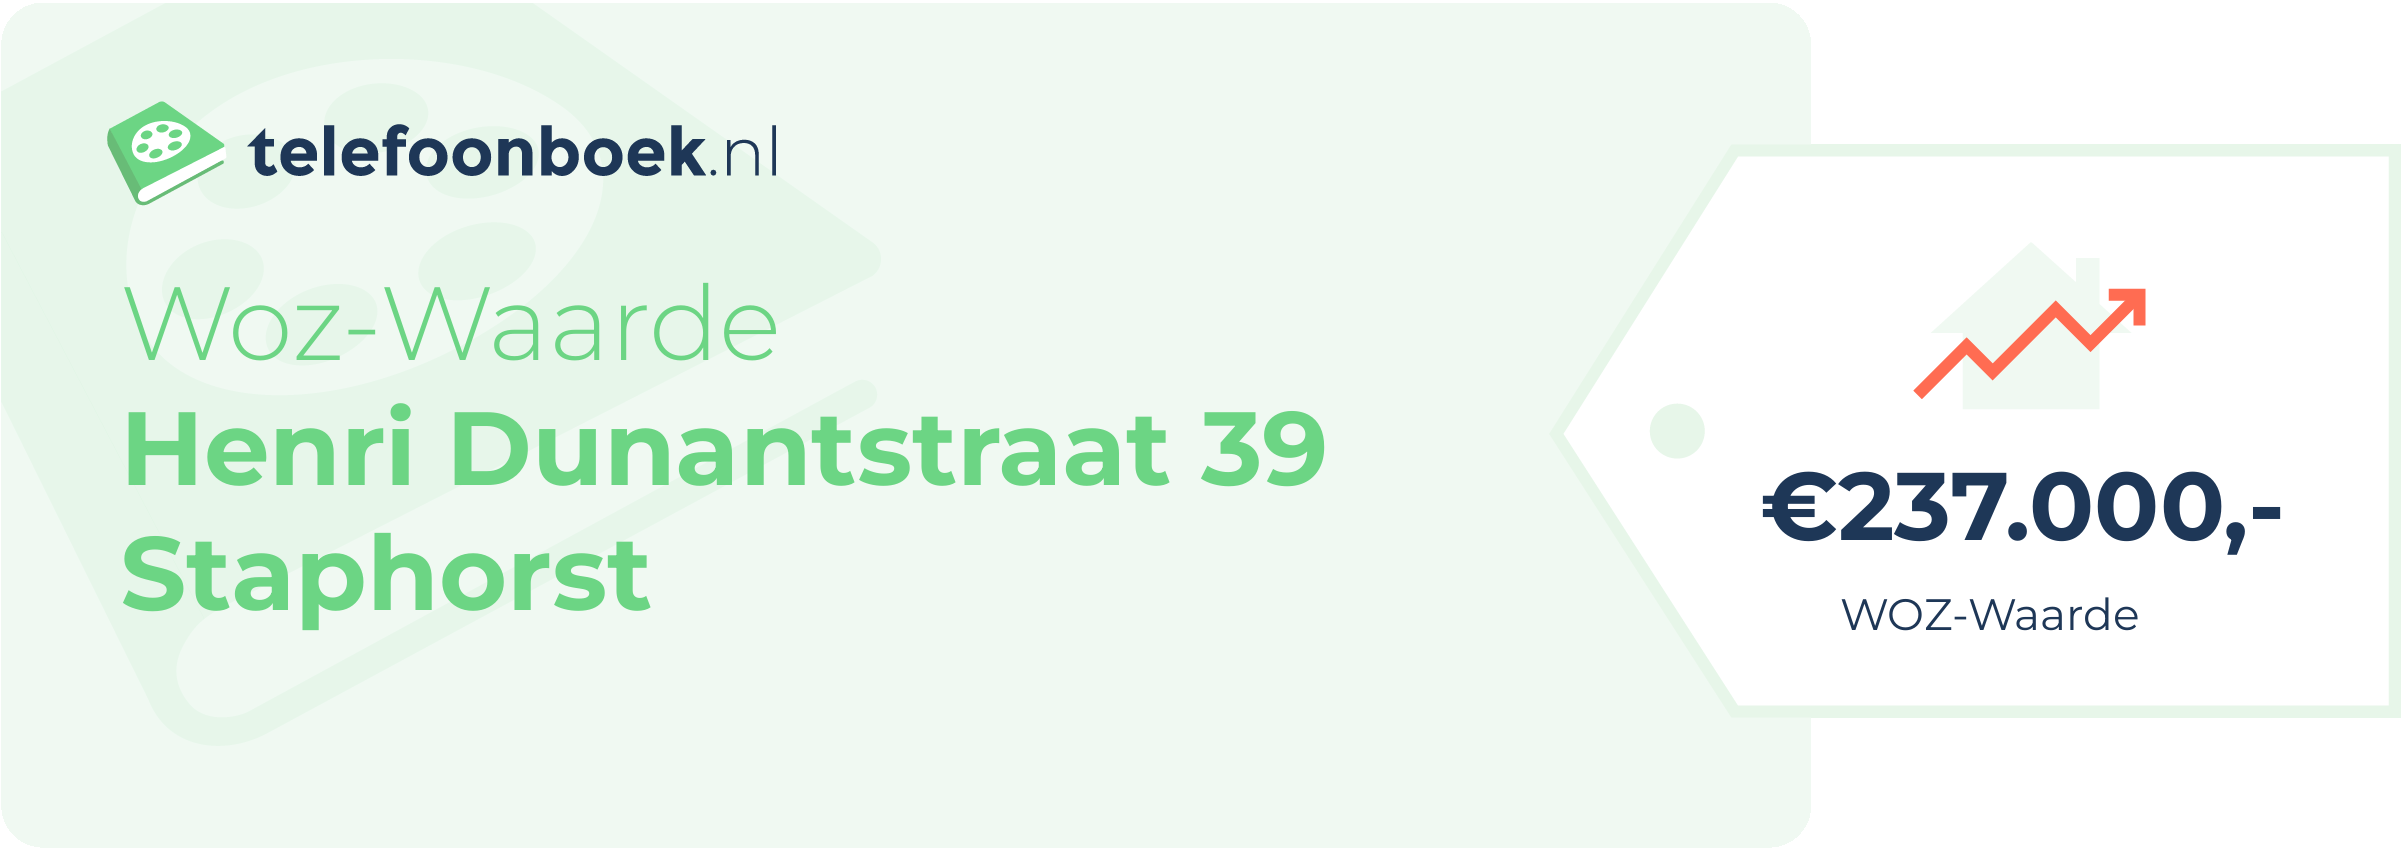 WOZ-waarde Henri Dunantstraat 39 Staphorst